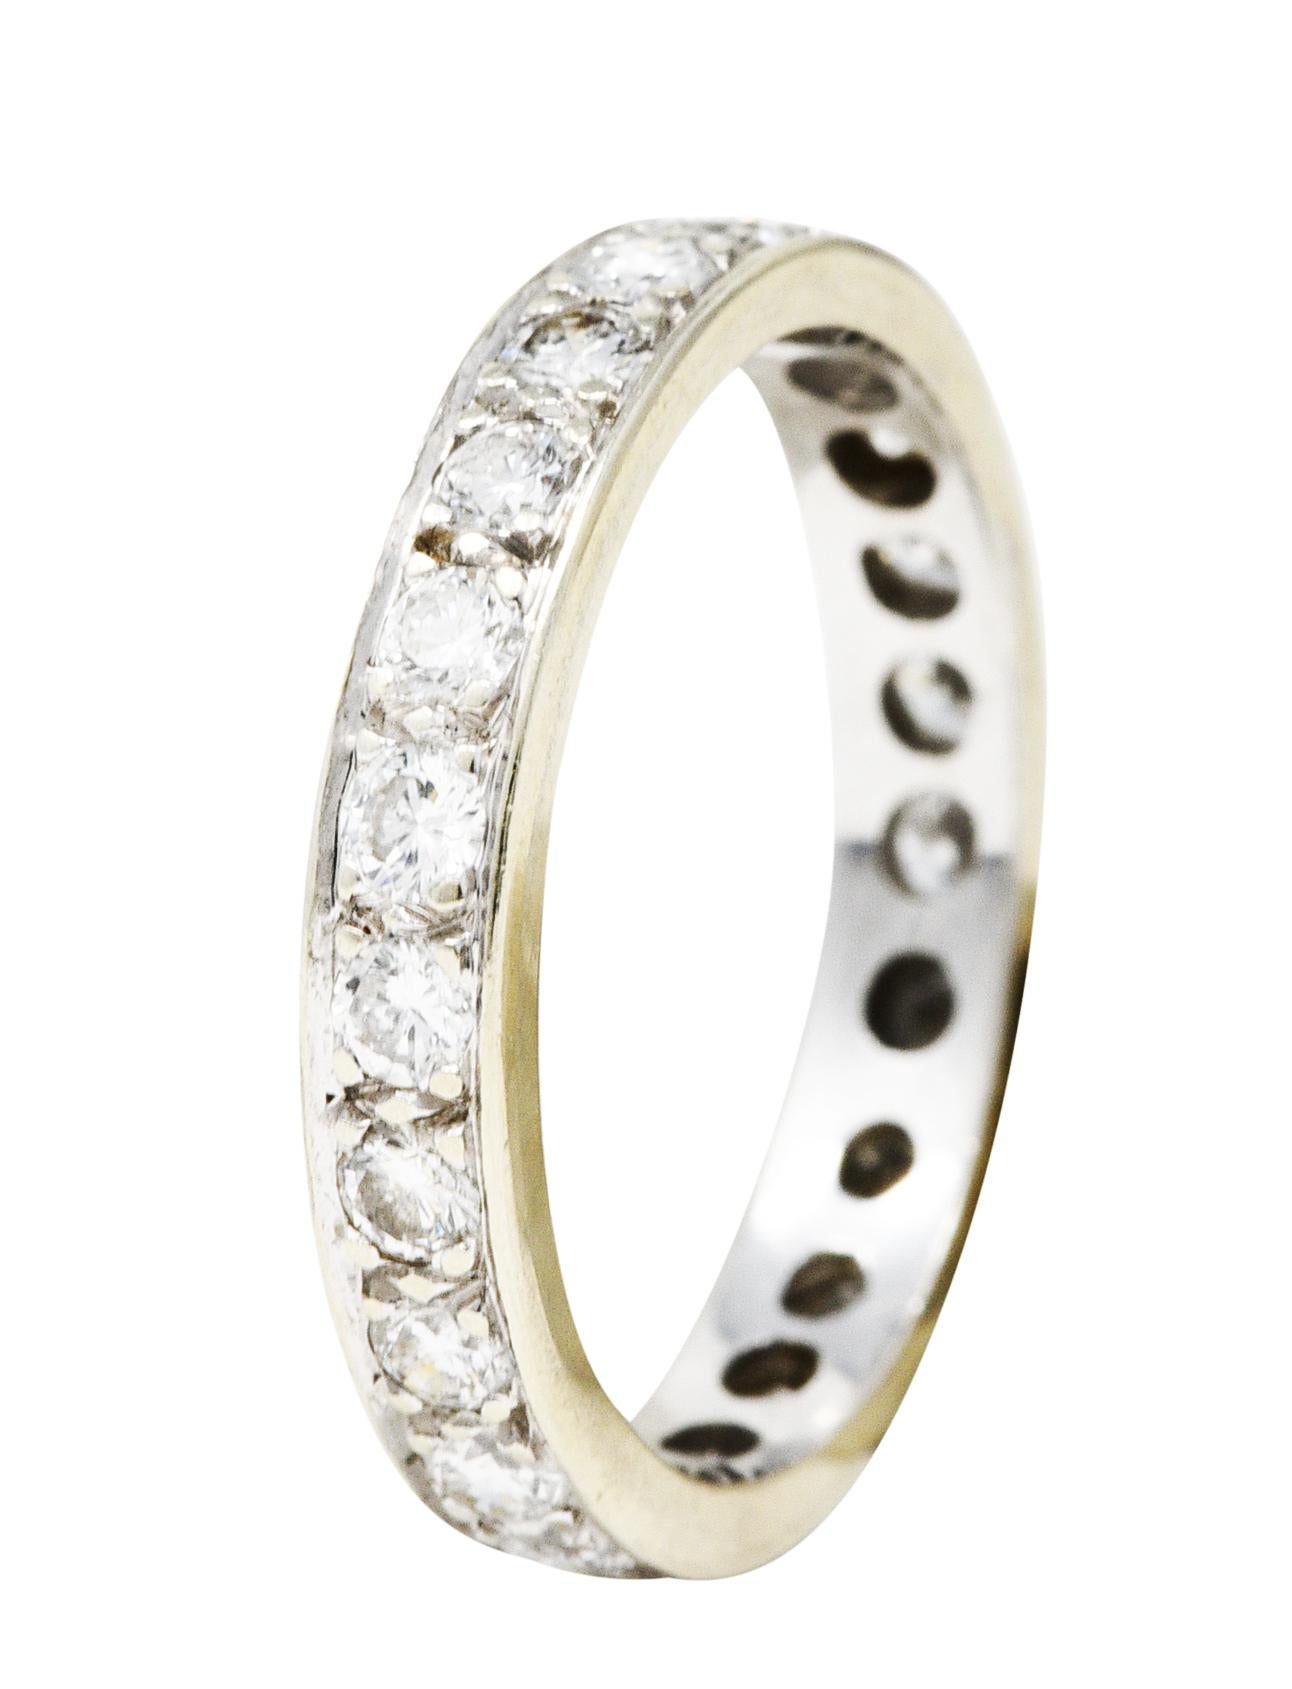 L'anneau présente des diamants ronds de taille brillante sertis sur tout le pourtour. Pesant environ 0,92 carat total - couleur G/H avec clarté VS1. Testé comme or blanc 14 carats. Circa : 20ème siècle. Taille de la bague : 5 1/4 et pas trop grande.